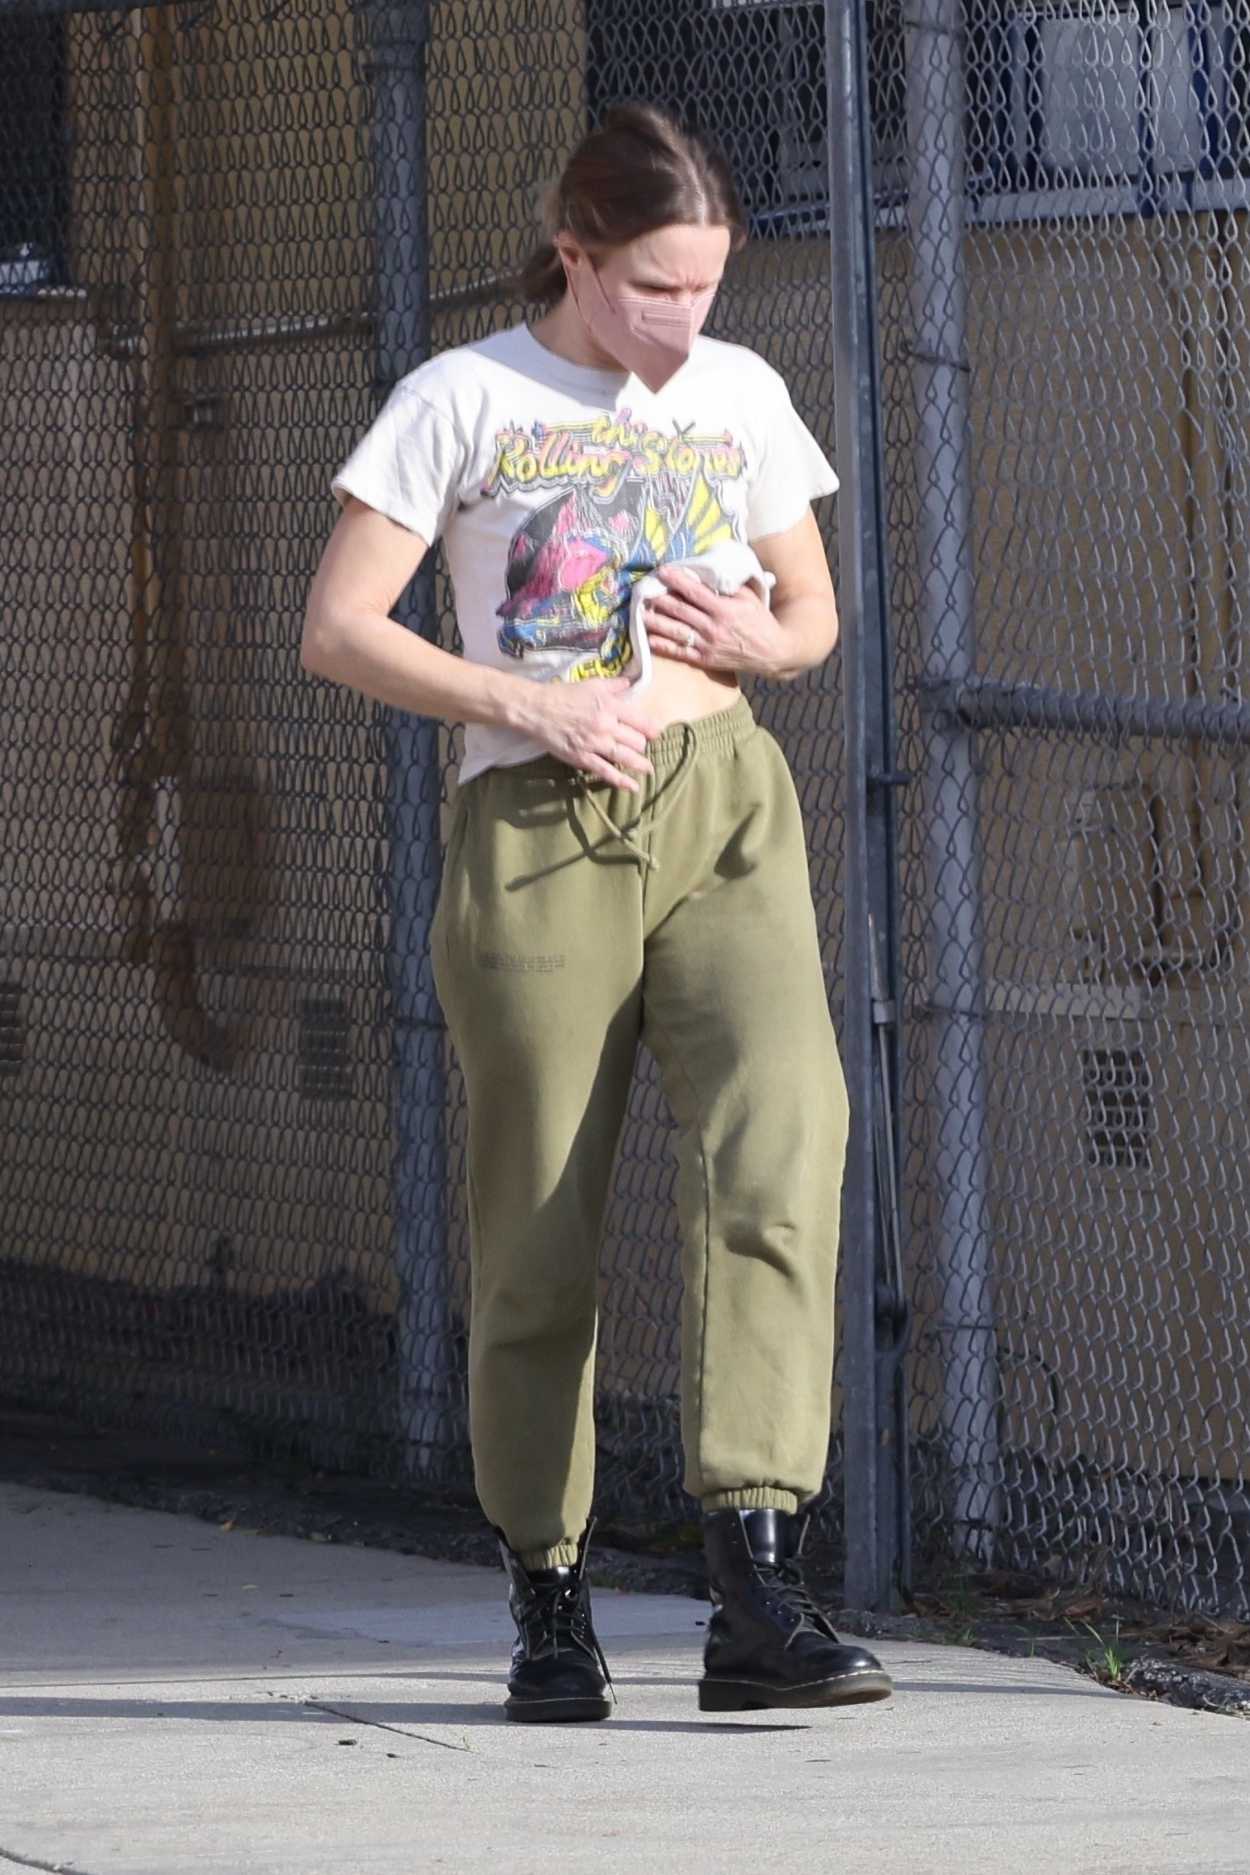 Kristen Bell in an Olive Sweatpants Goes Grocery Shopping in Los Feliz ...